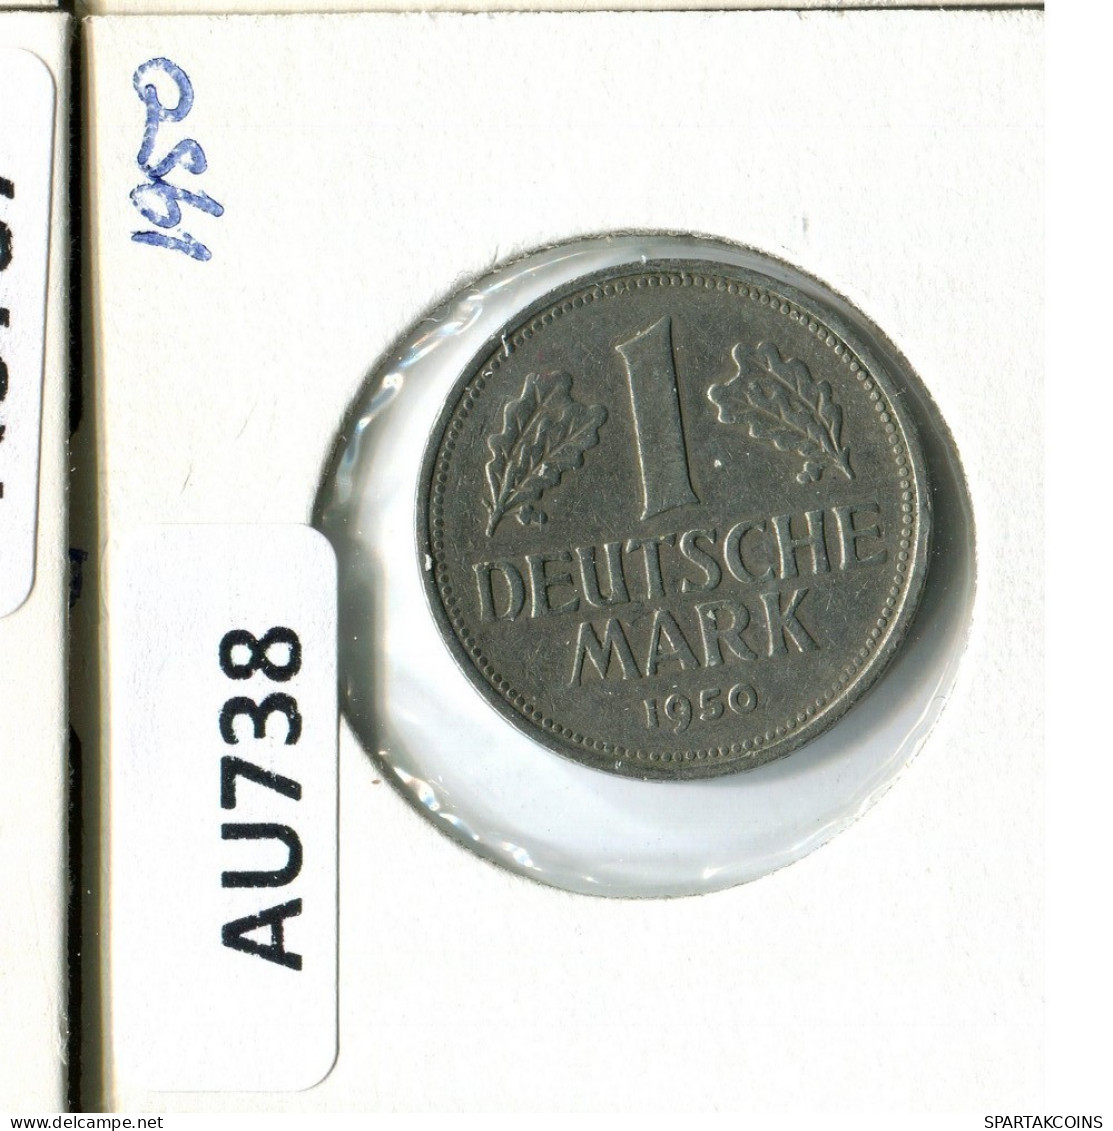 1 DM 1950 G BRD ALEMANIA Moneda GERMANY #AU738.E.A - 1 Marco